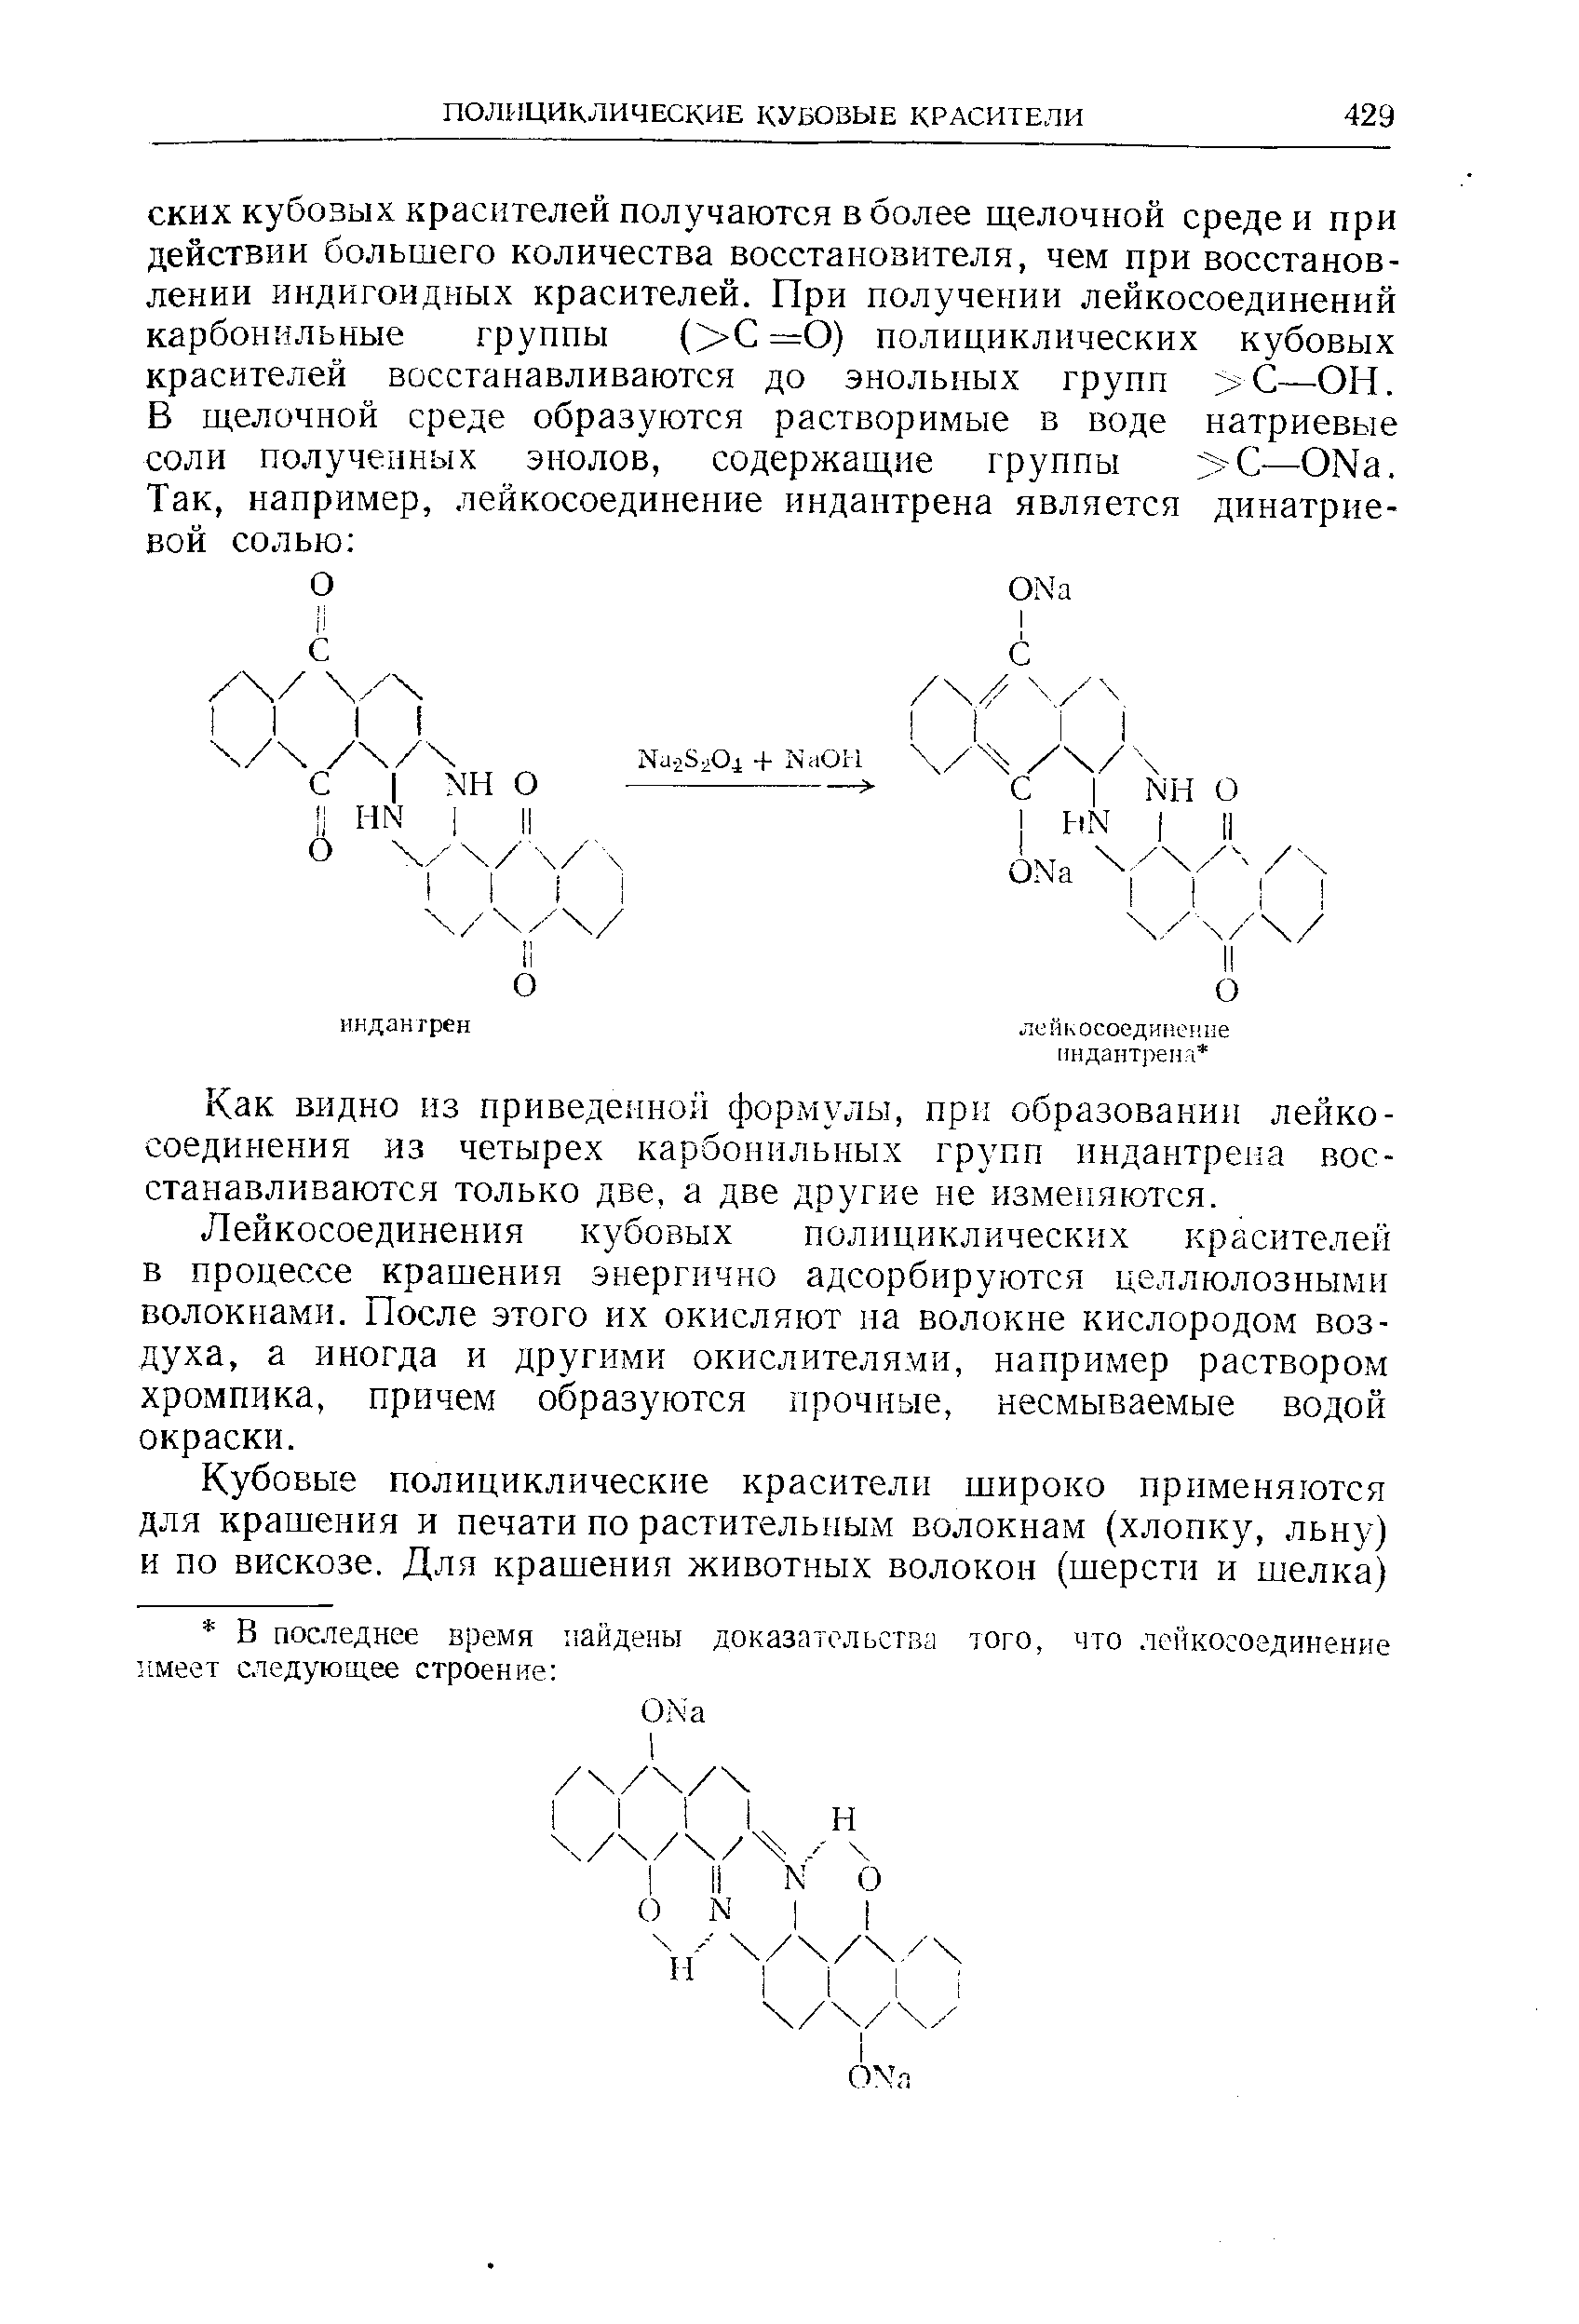 Как видно из приведенной формулы, при образовании лейкосоединения из четырех карбонильных групп индантрена восстанавливаются только две, а две другие не изменяются.